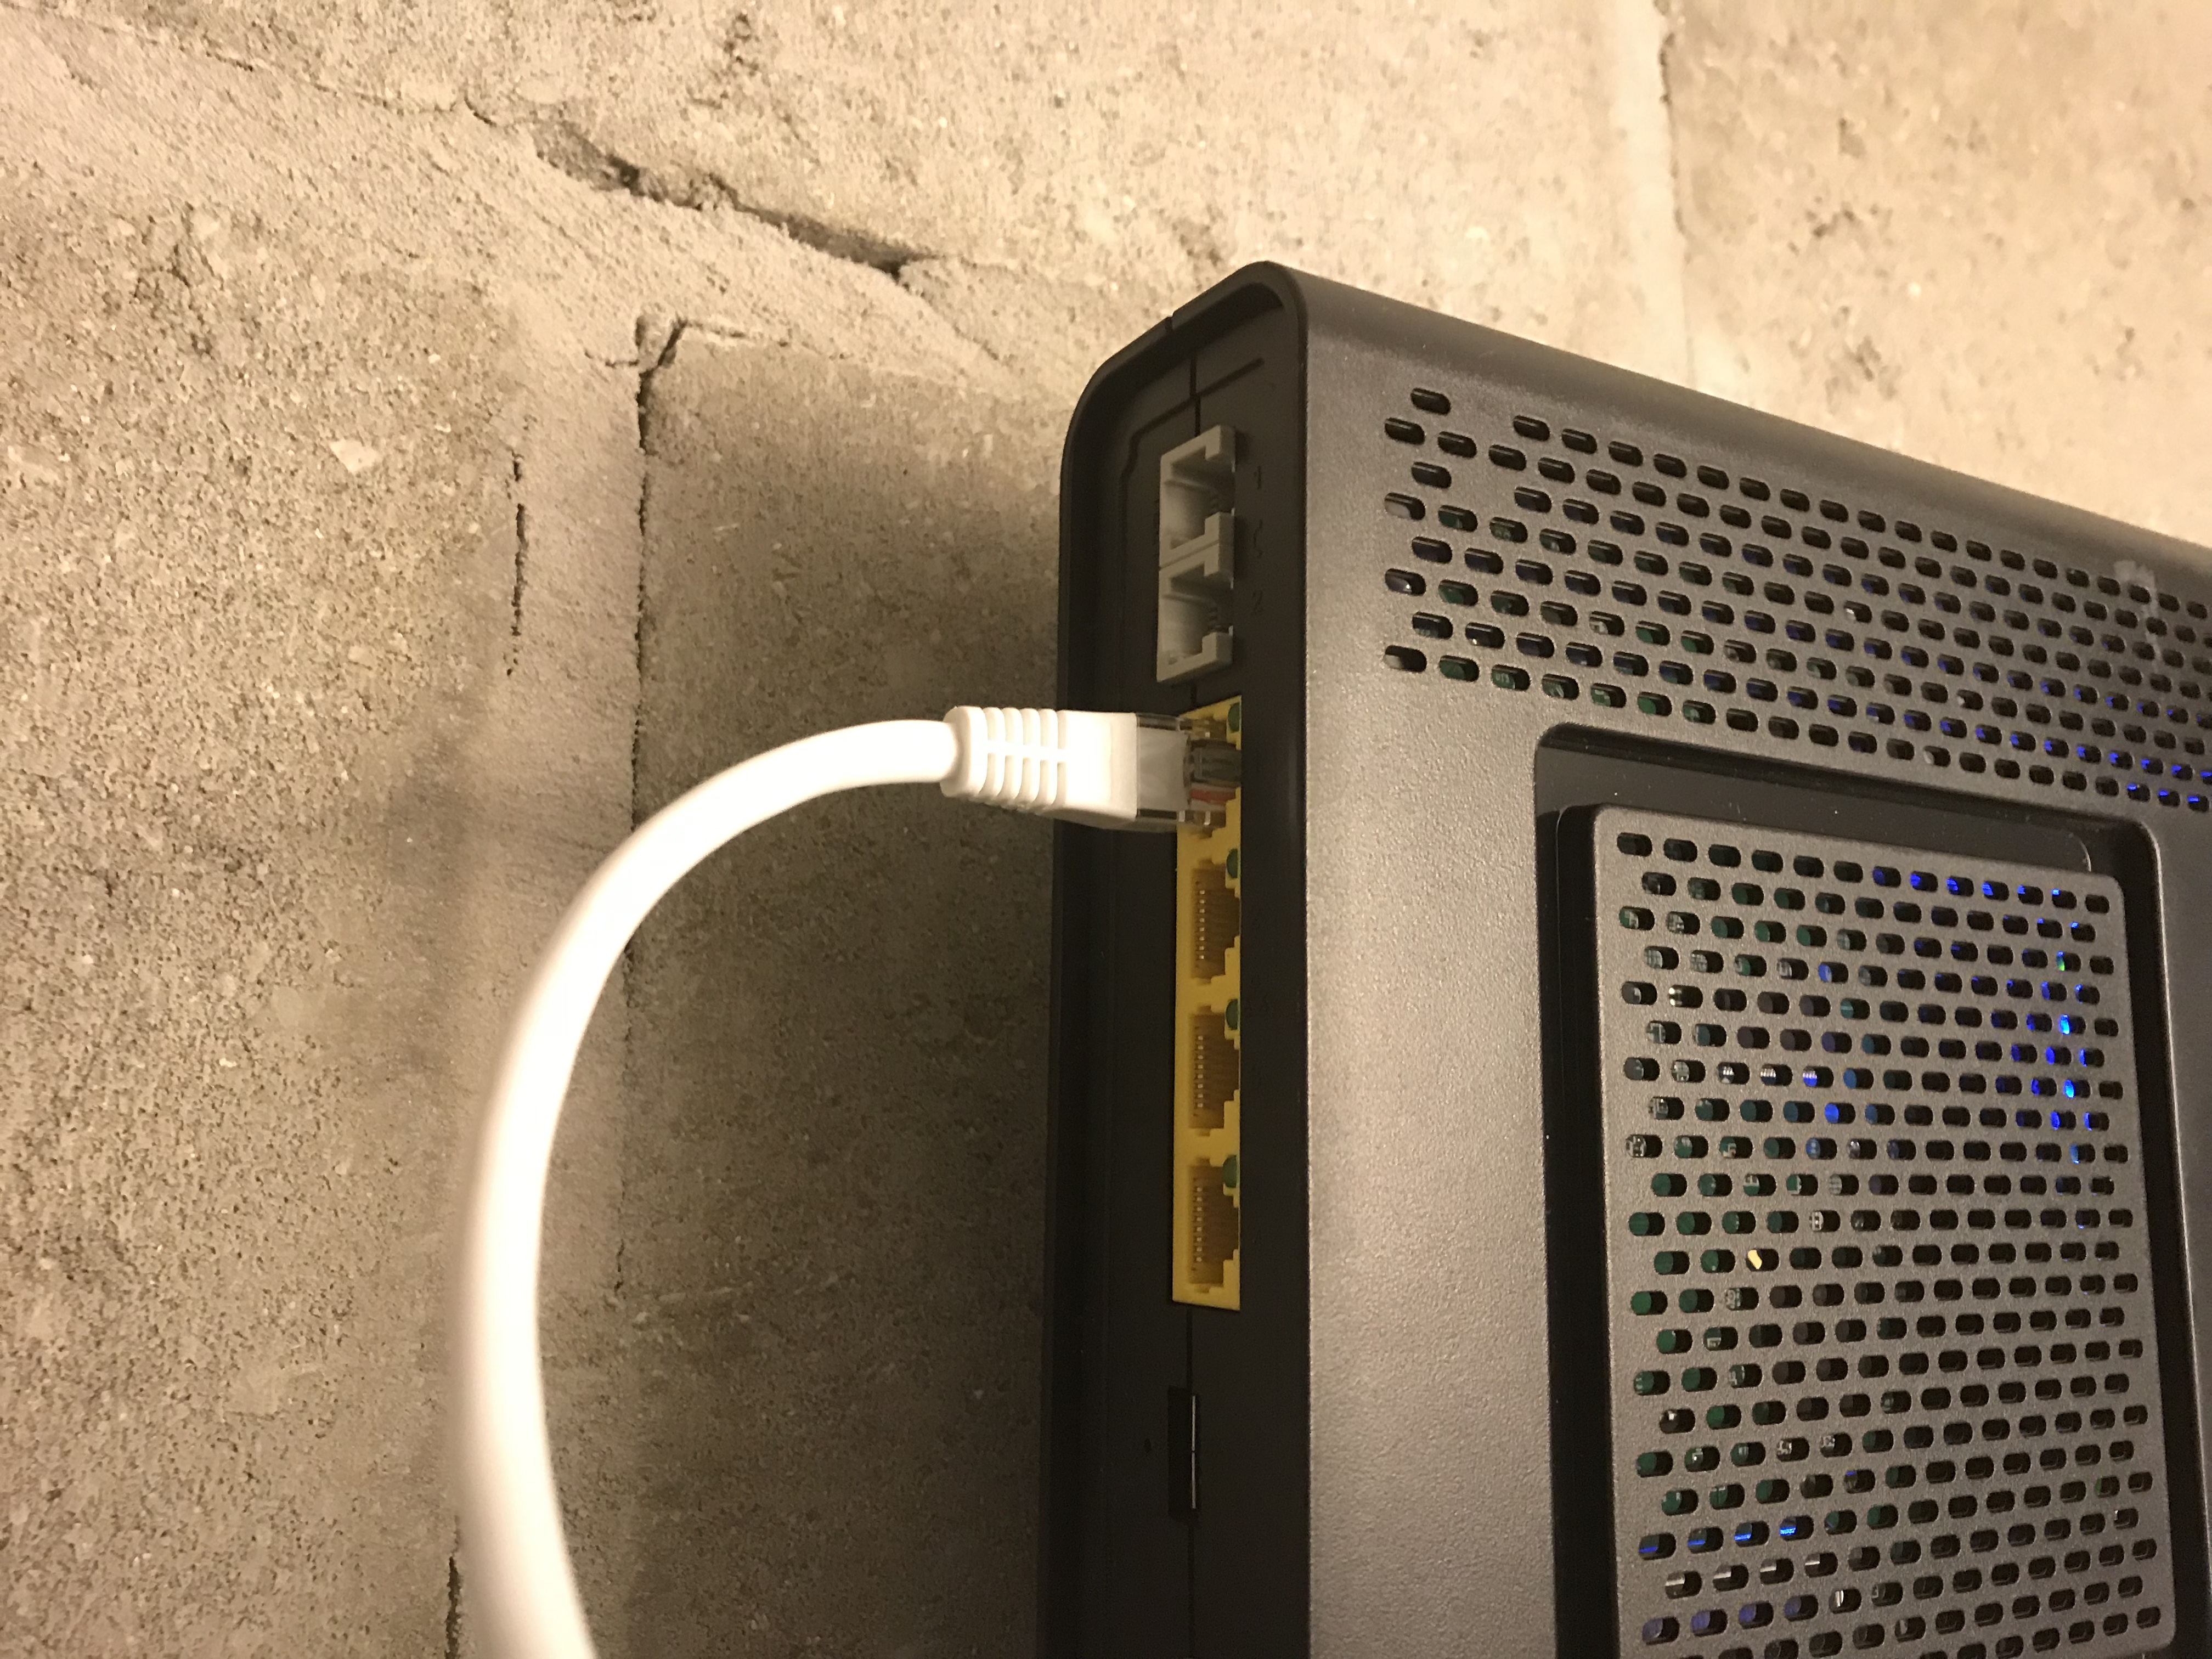 Baars Plicht uniek Ethernet aansluiting in huis werkt niet - De Netweters